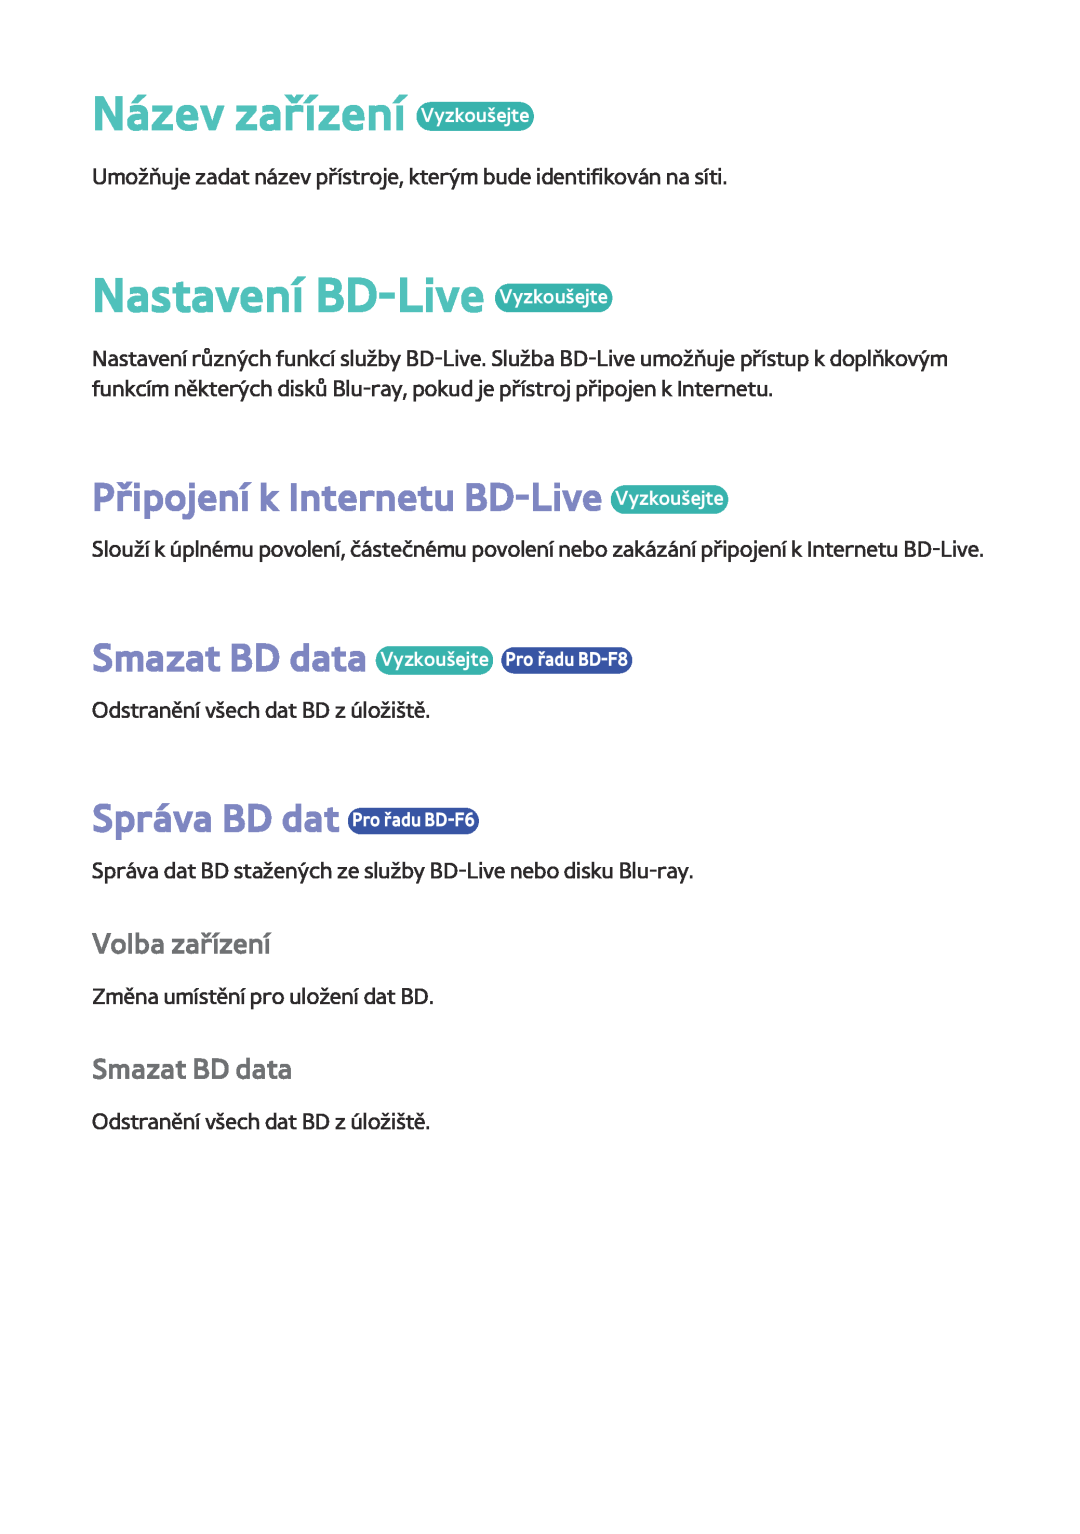 Samsung BD-F8500/EN Název zařízení Vyzkoušejte, Nastavení BD-Live Vyzkoušejte, Připojení k Internetu BD-Live Vyzkoušejte 